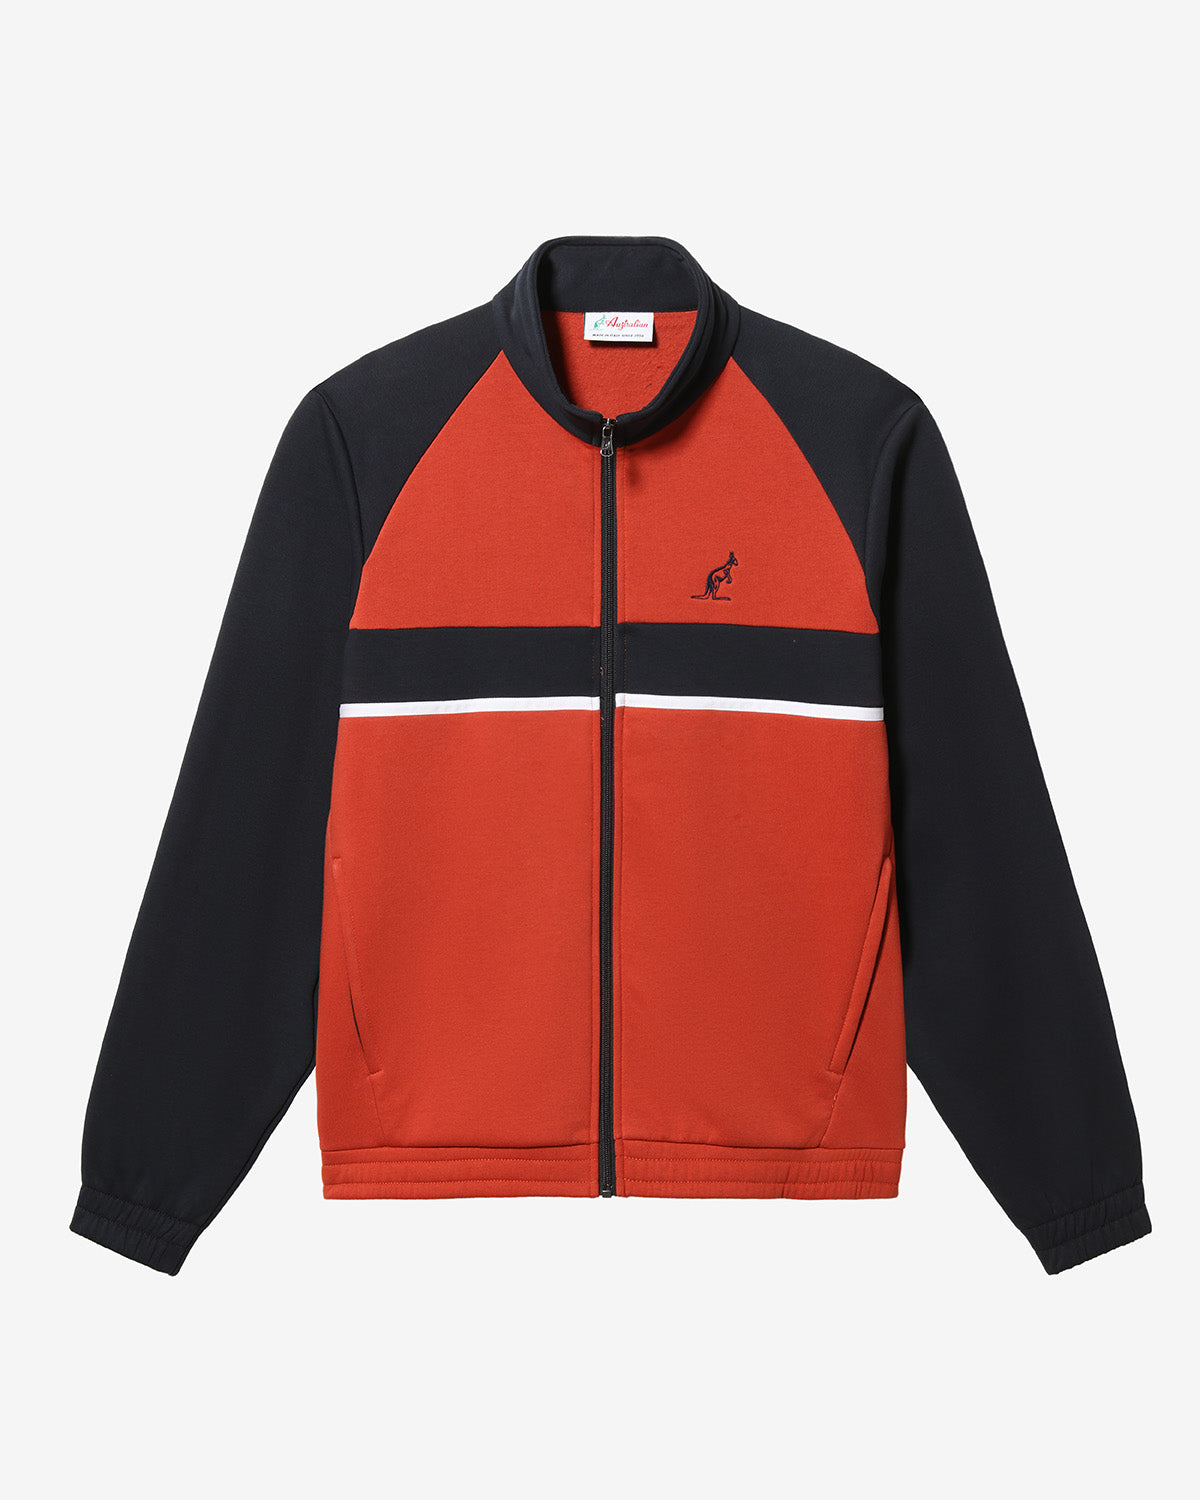 Classy Track Jacket: Australian Sportswear